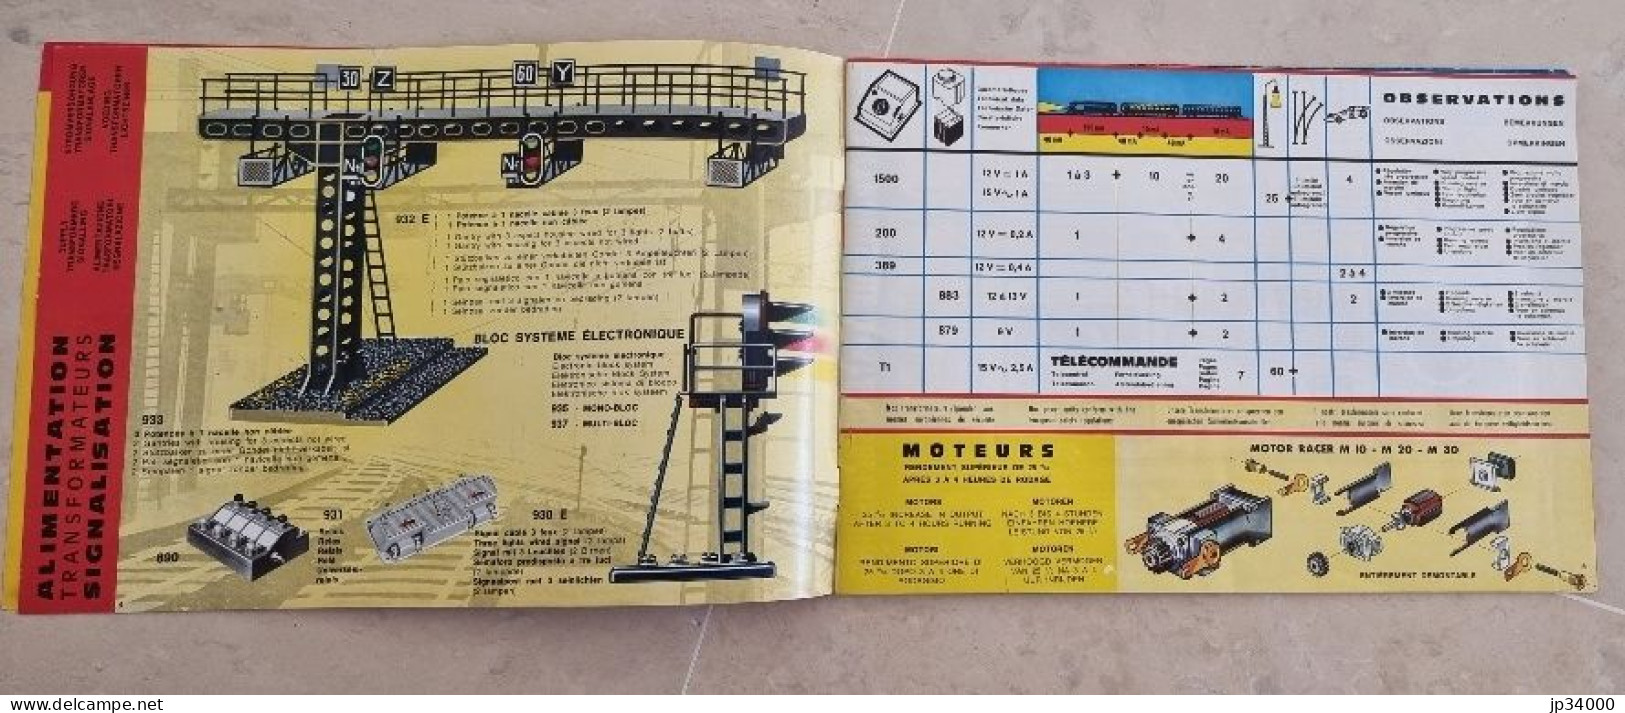 TELECOMMANDE ELECTRONIQUE (Jouef HO) Complet 32 Pages, 1969-70 (Trains Electriques) - Letteratura & DVD